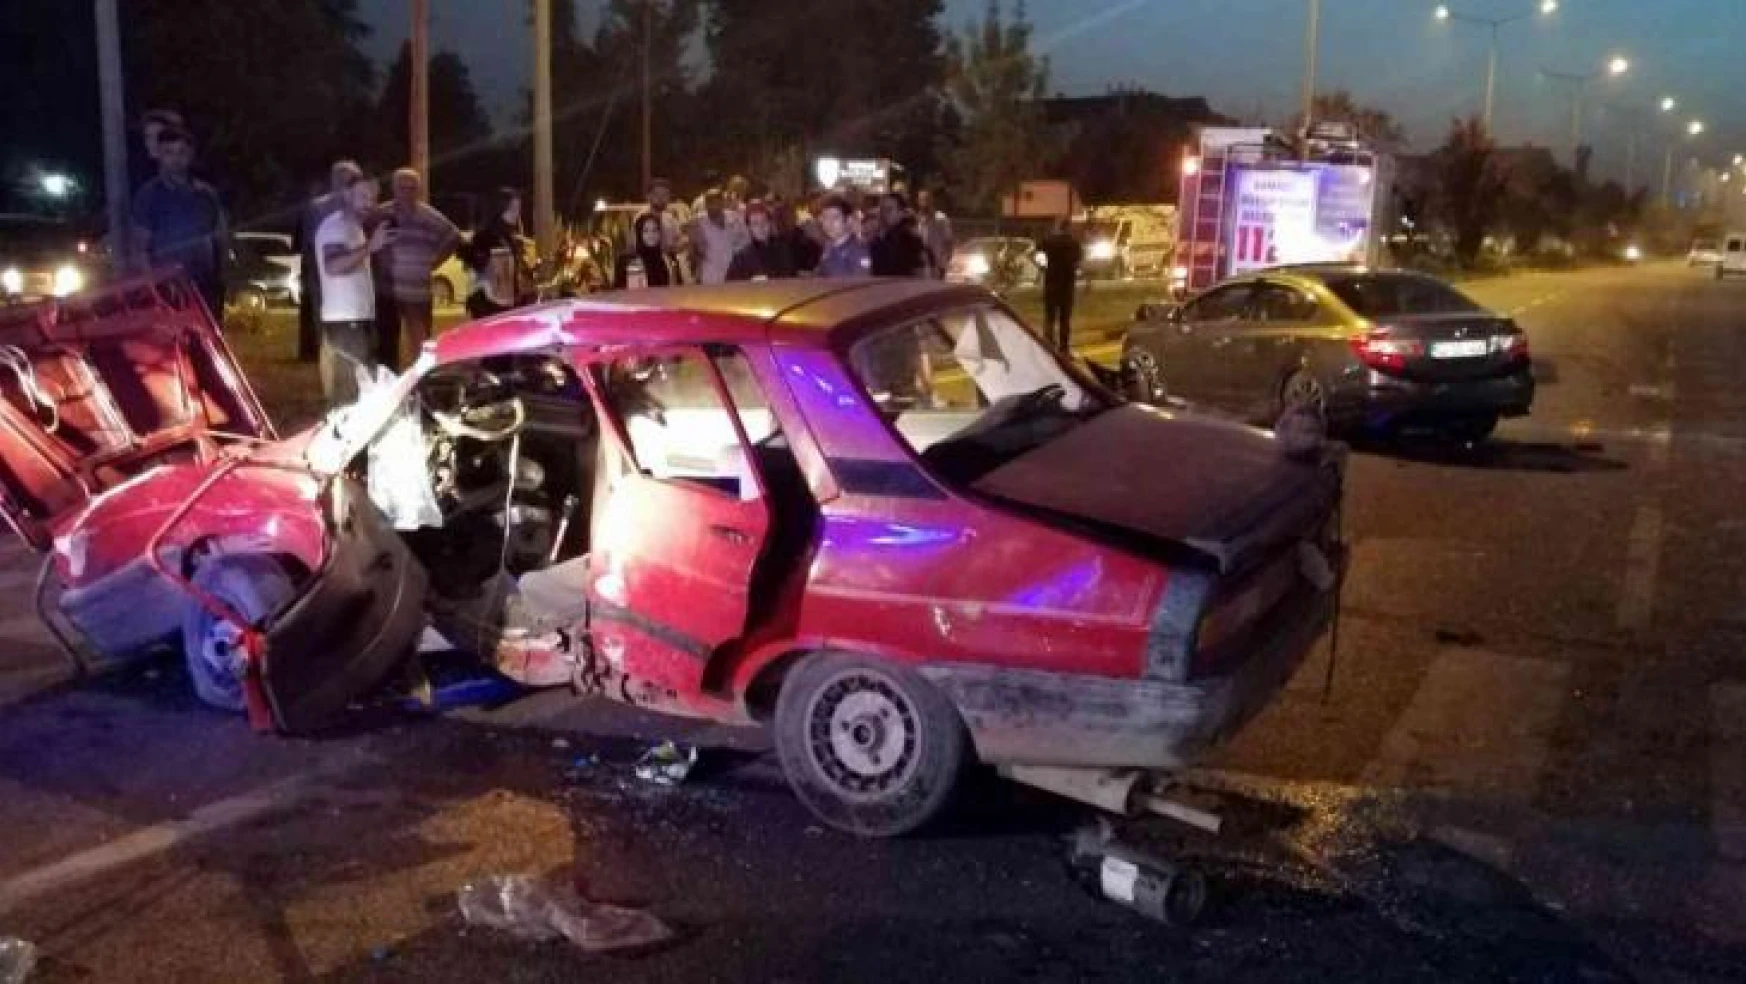 Samsun'da trafik kazası: 8 yaralı